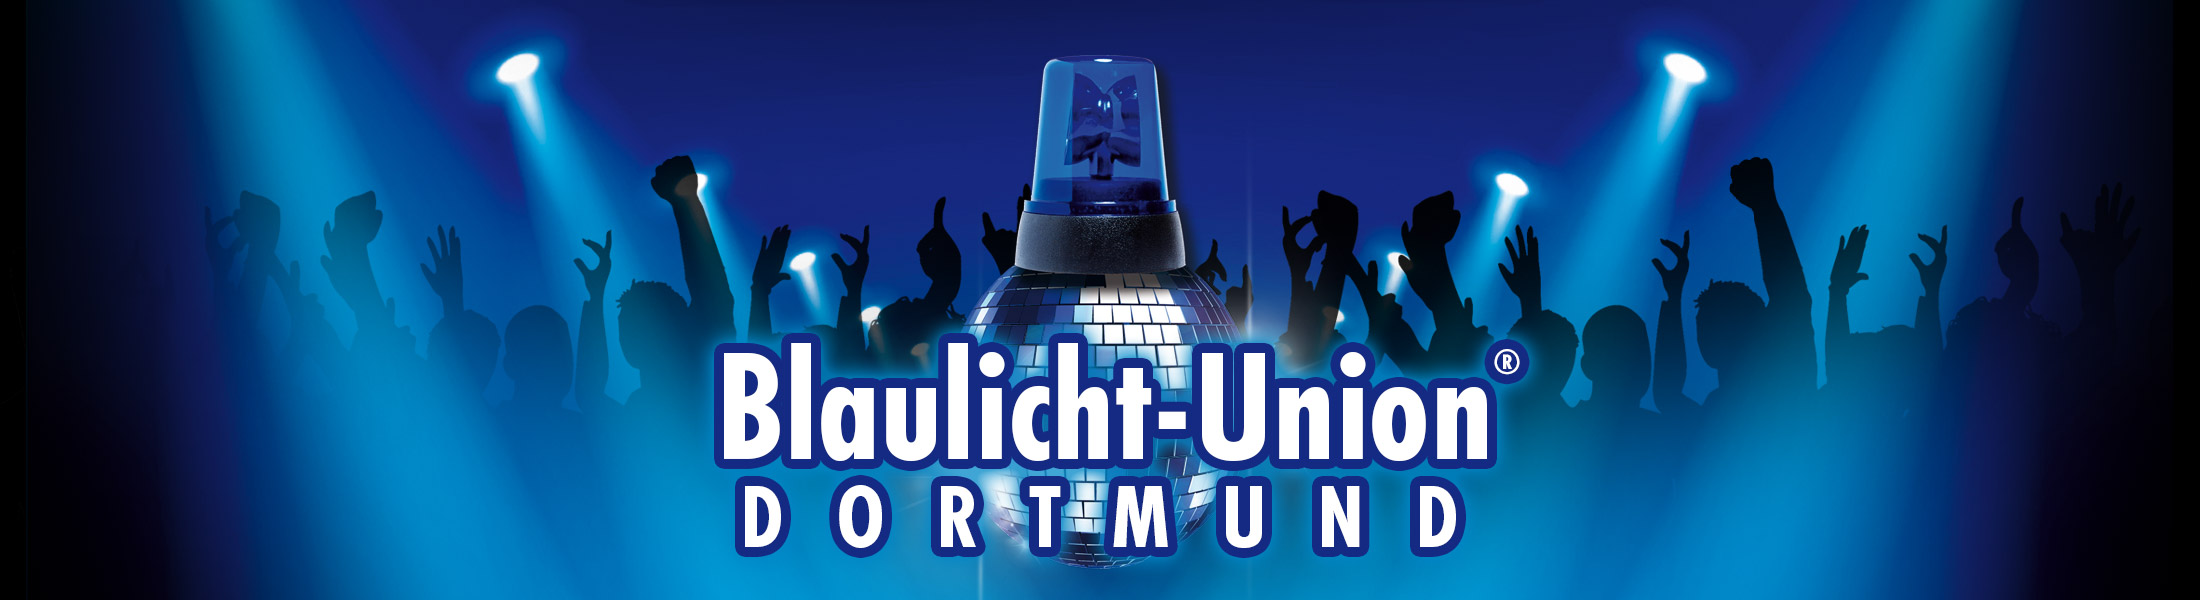 Blaulicht Union Party® Dortmund